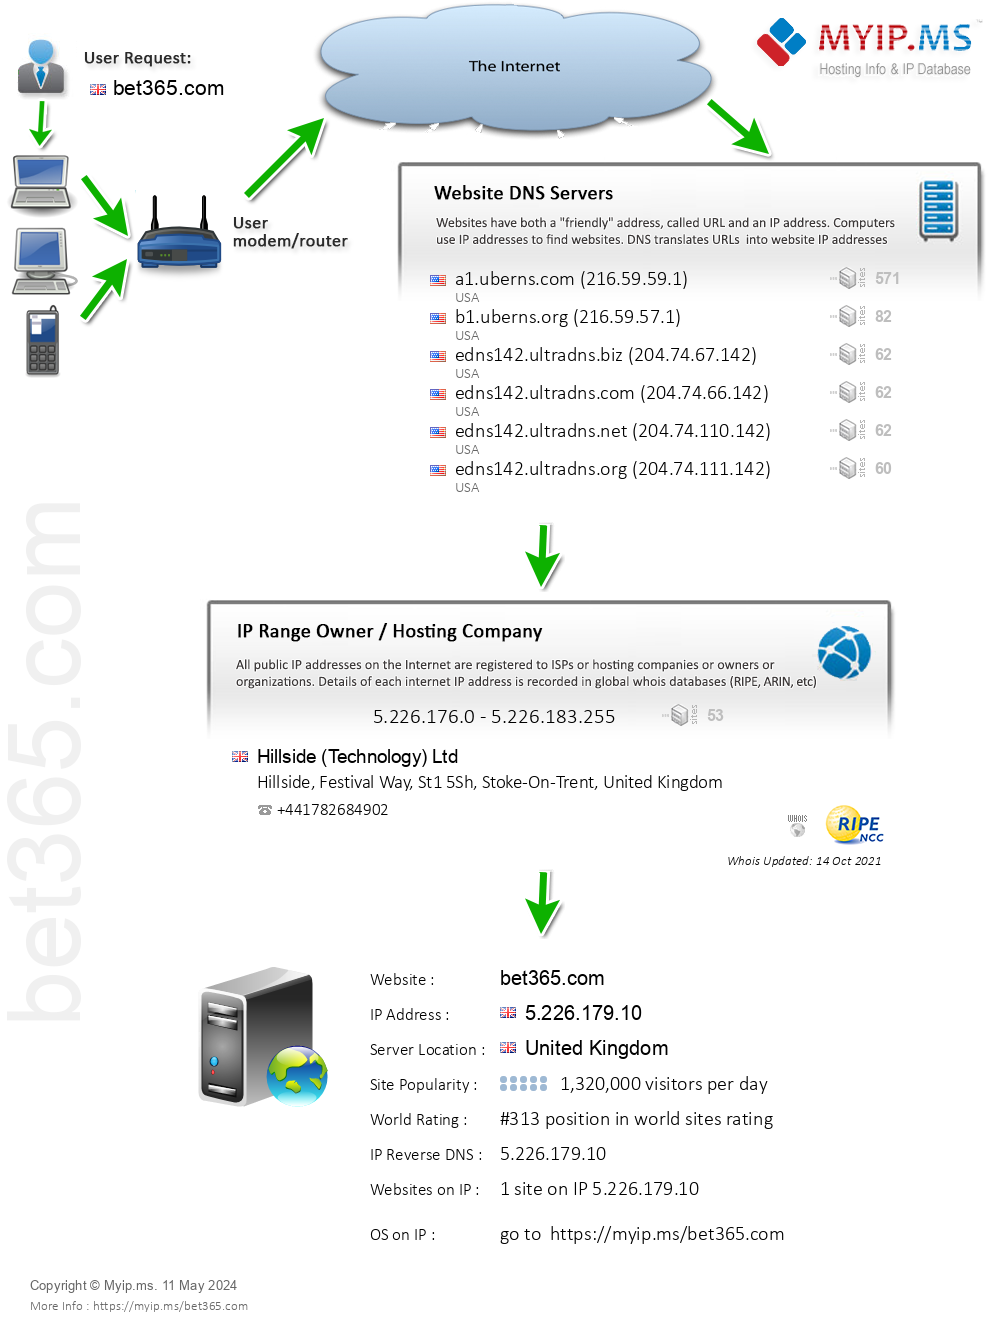 Bet365.com - Website Hosting Visual IP Diagram